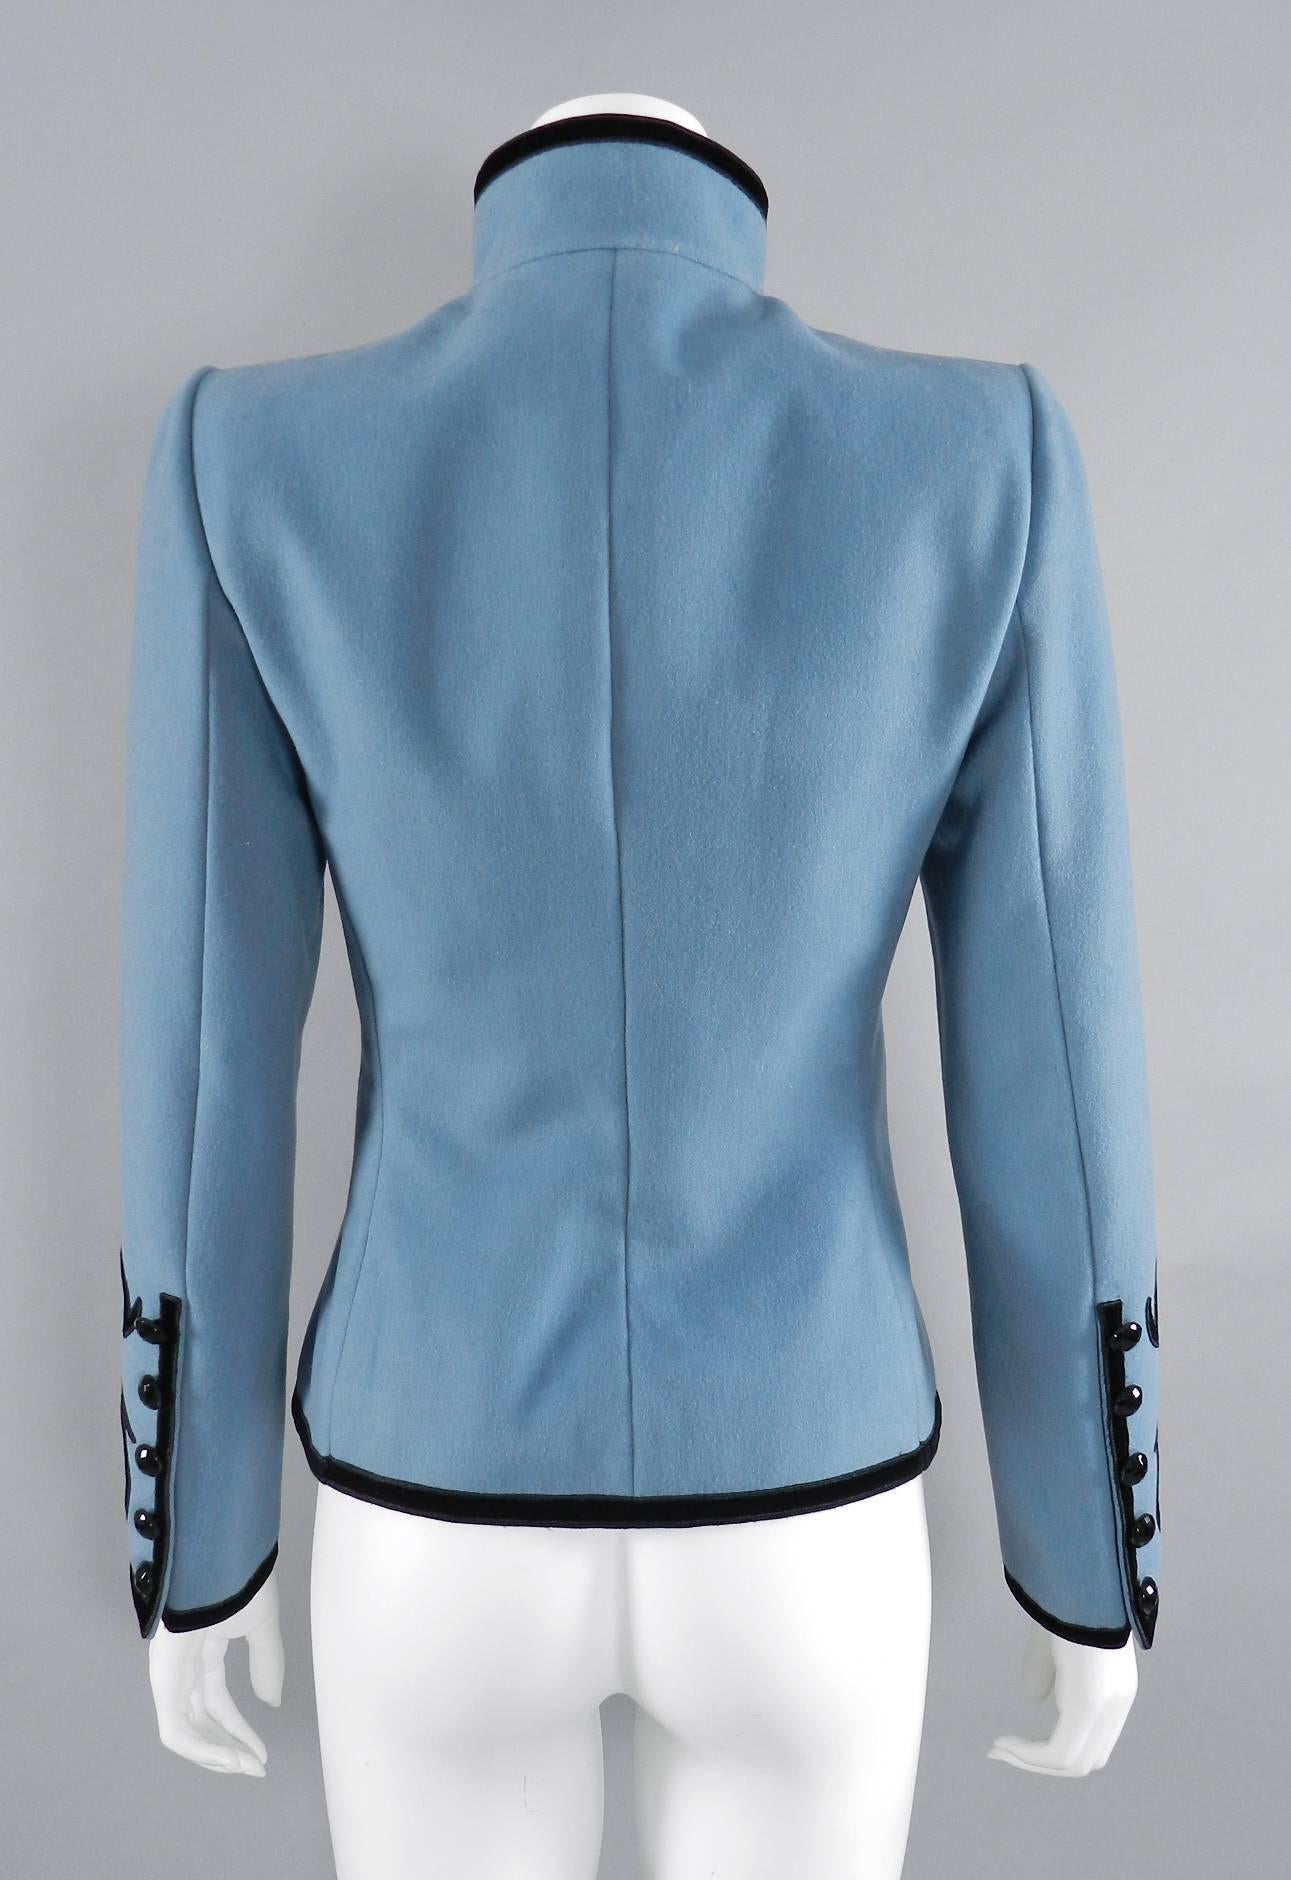 Yves Saint Laurent Final Collection 2002 Haute Couture Blue Lesage Jacket  2